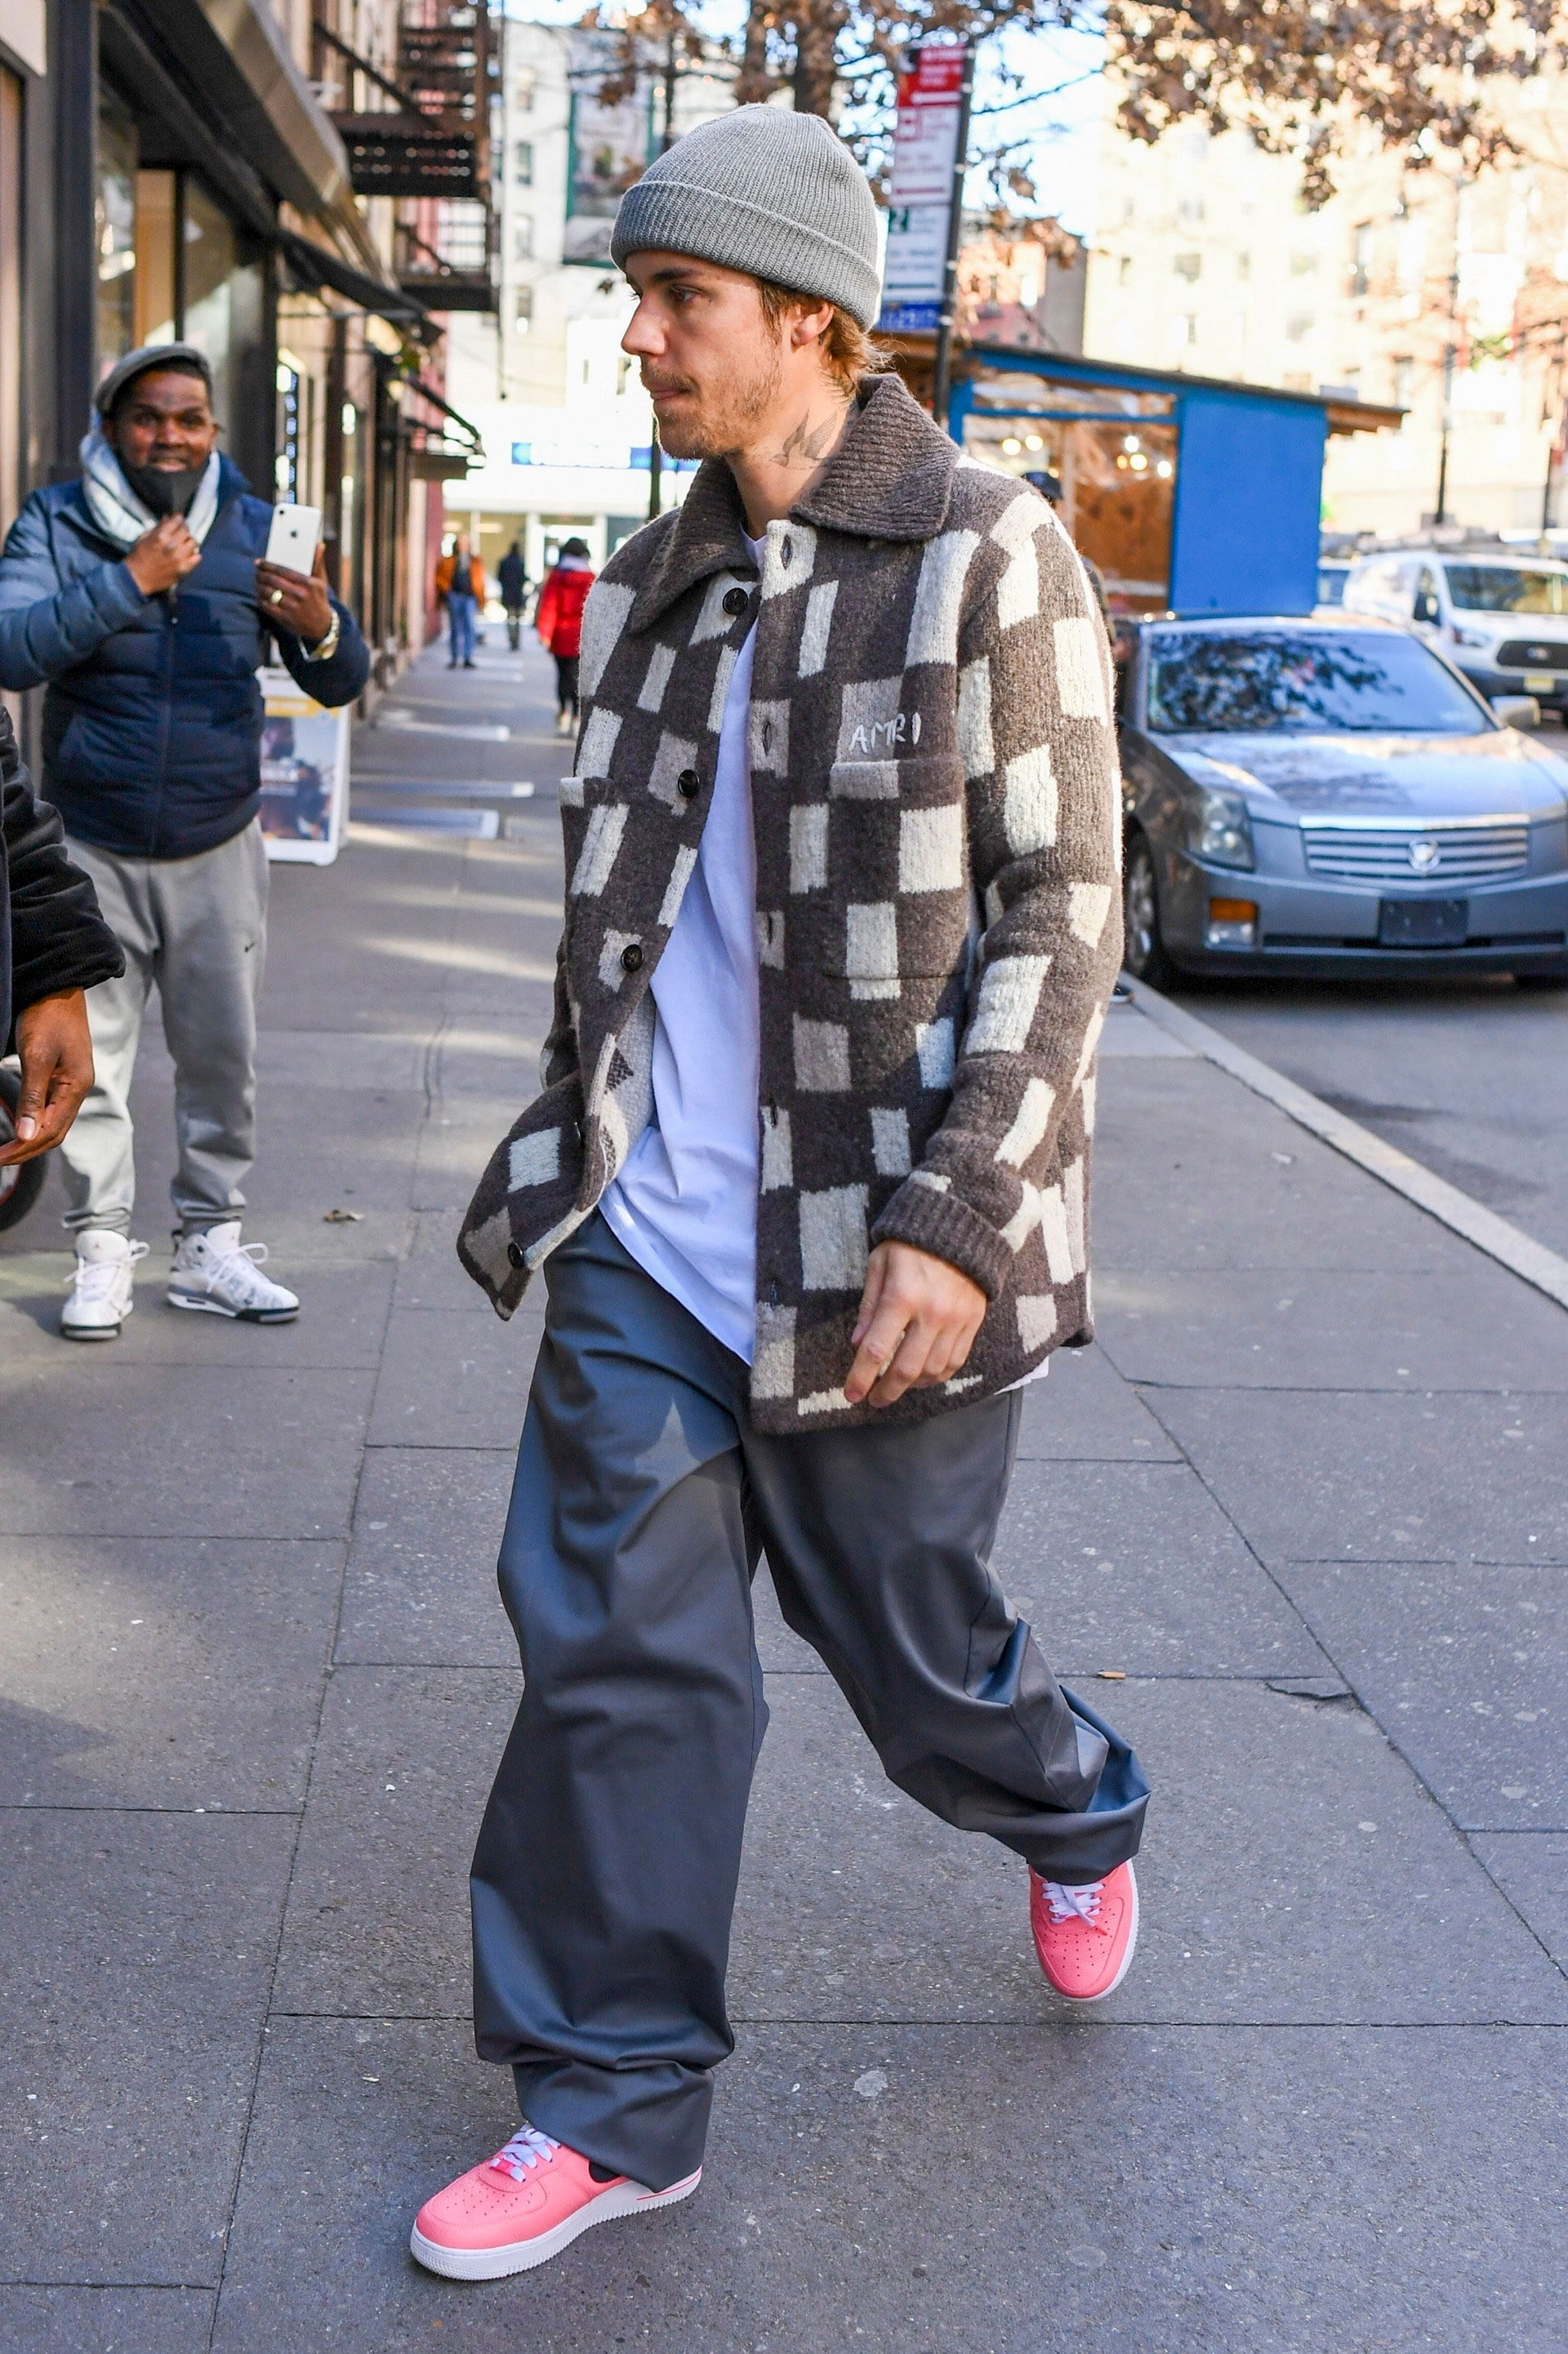 Justin Bieber fue fotografiado cuando llegaba a su estudio de Nueva York. Lució una campera a cuadros, gorro gris que combinó con su pantalón, remera blanca y zapatillas rosas